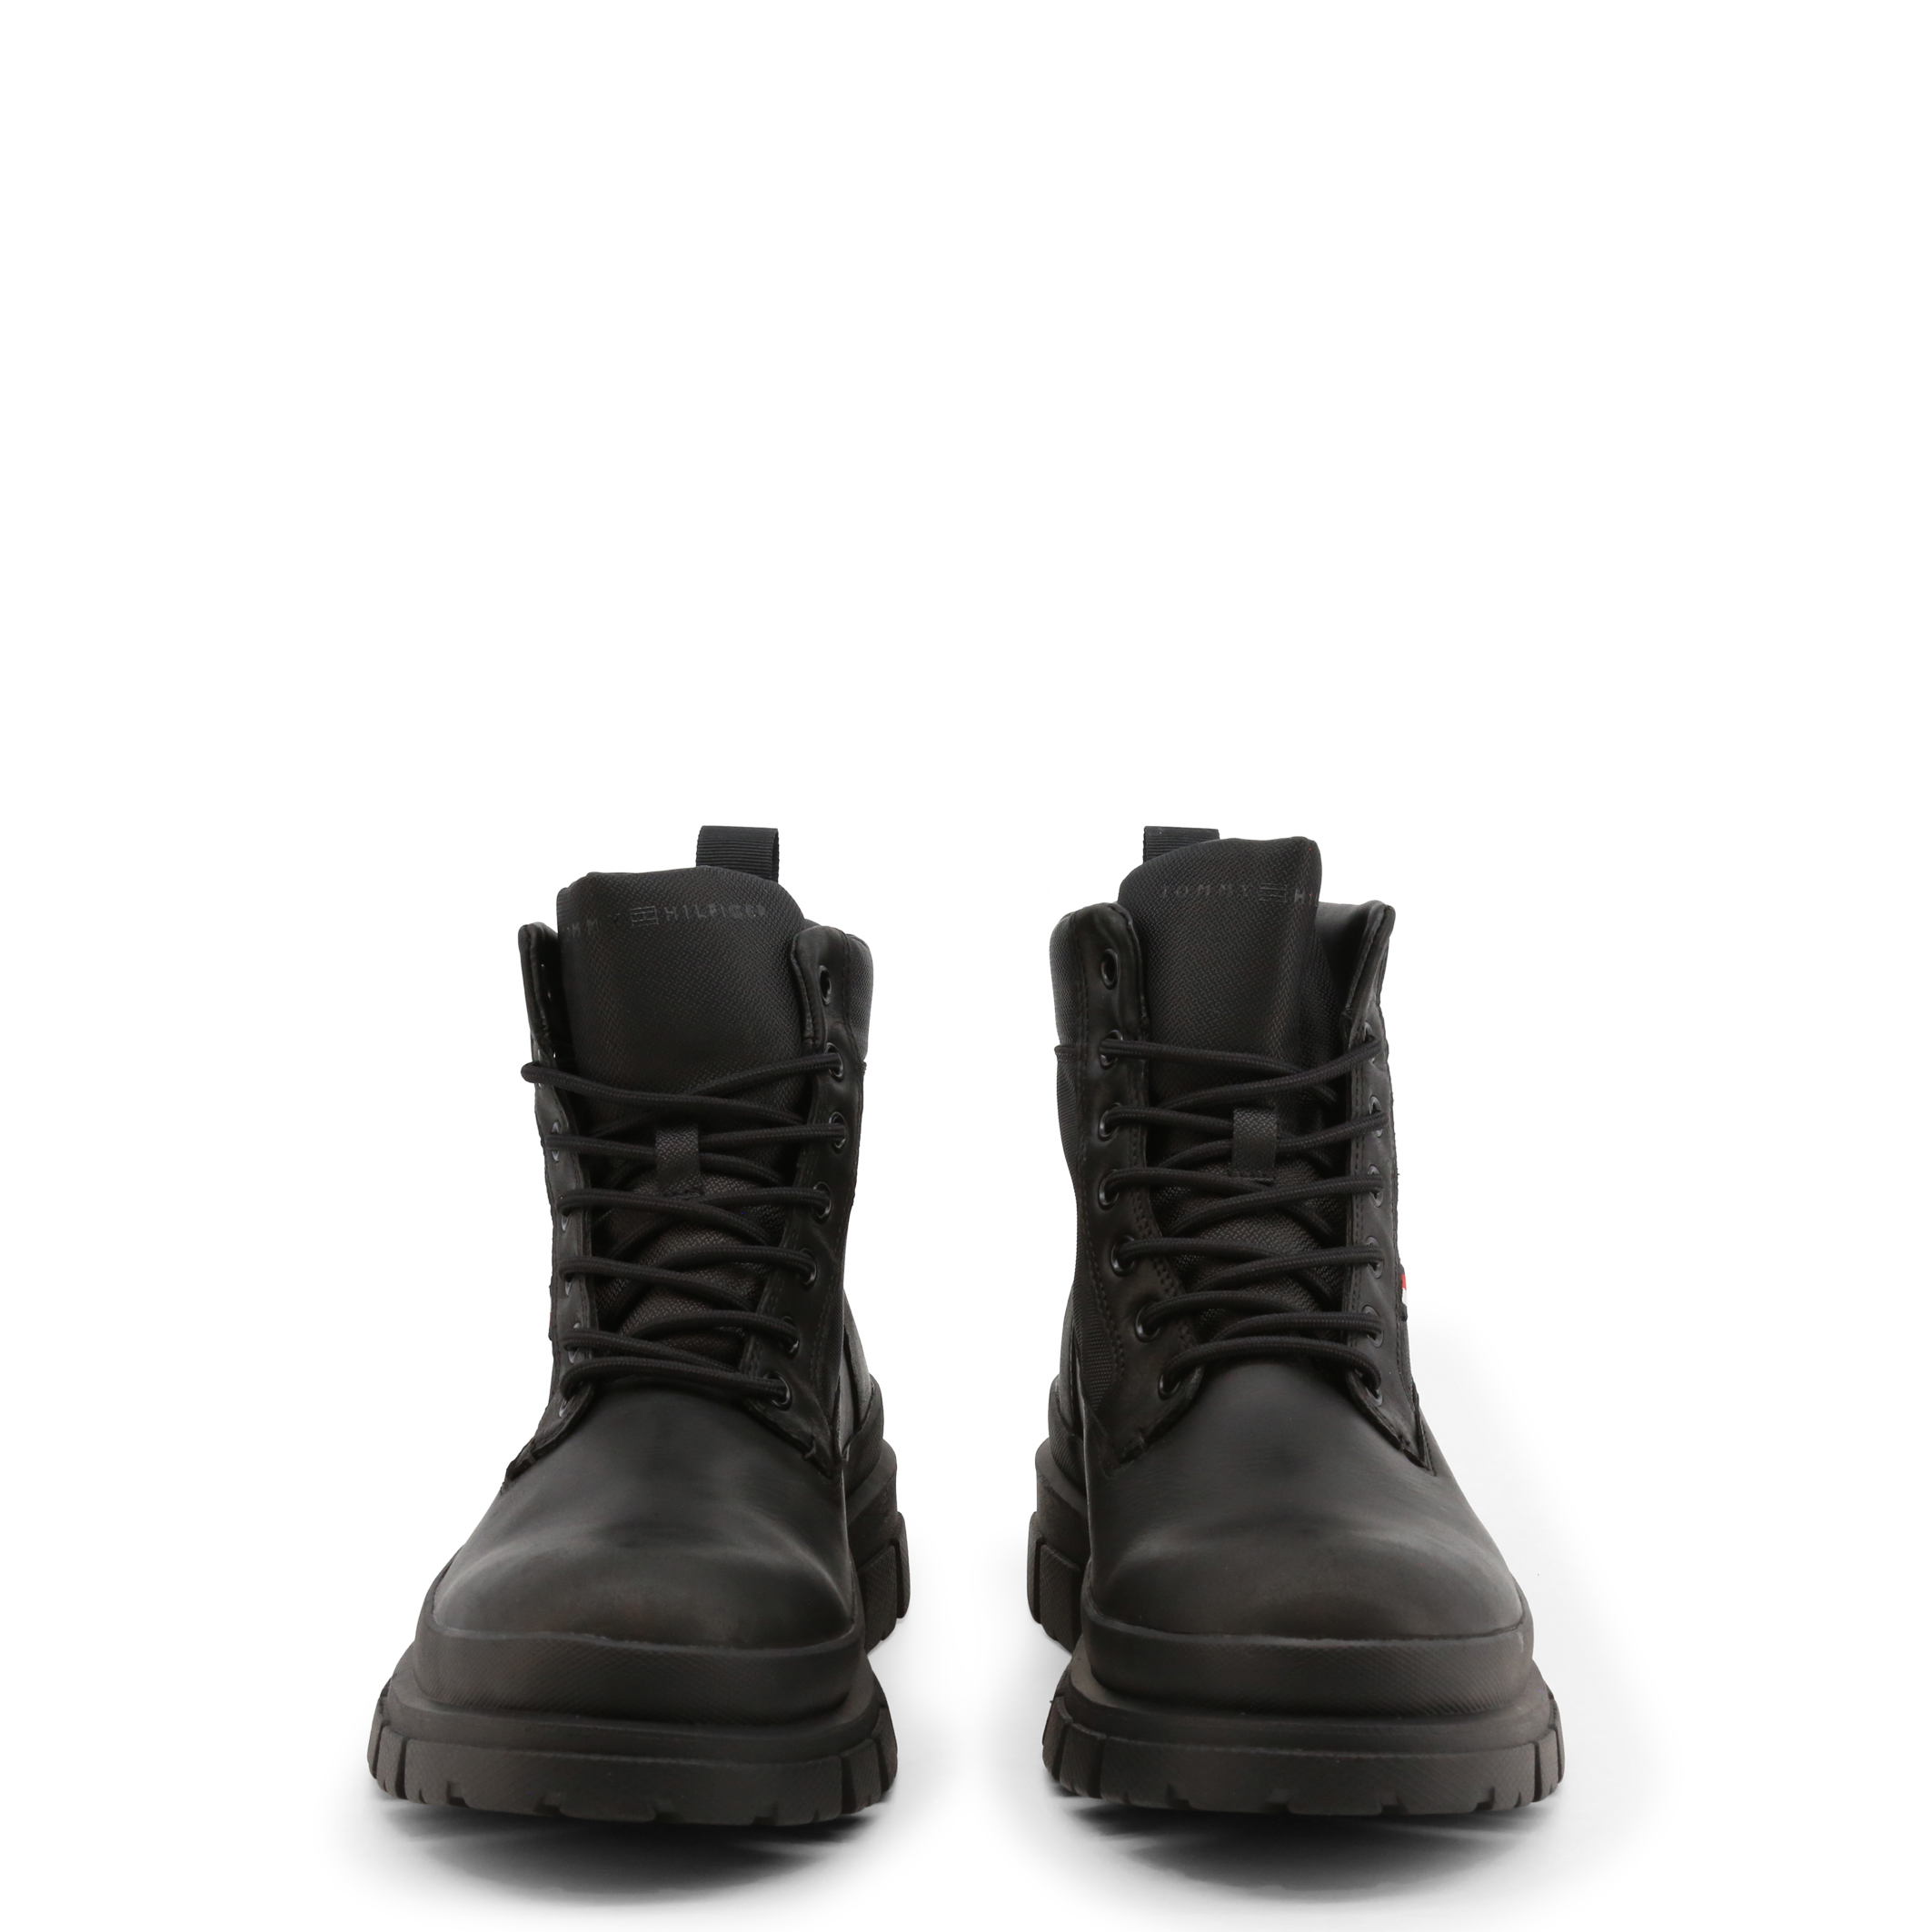 Tommy Hilfiger Black Ankle boots for Men - FM0FM03800